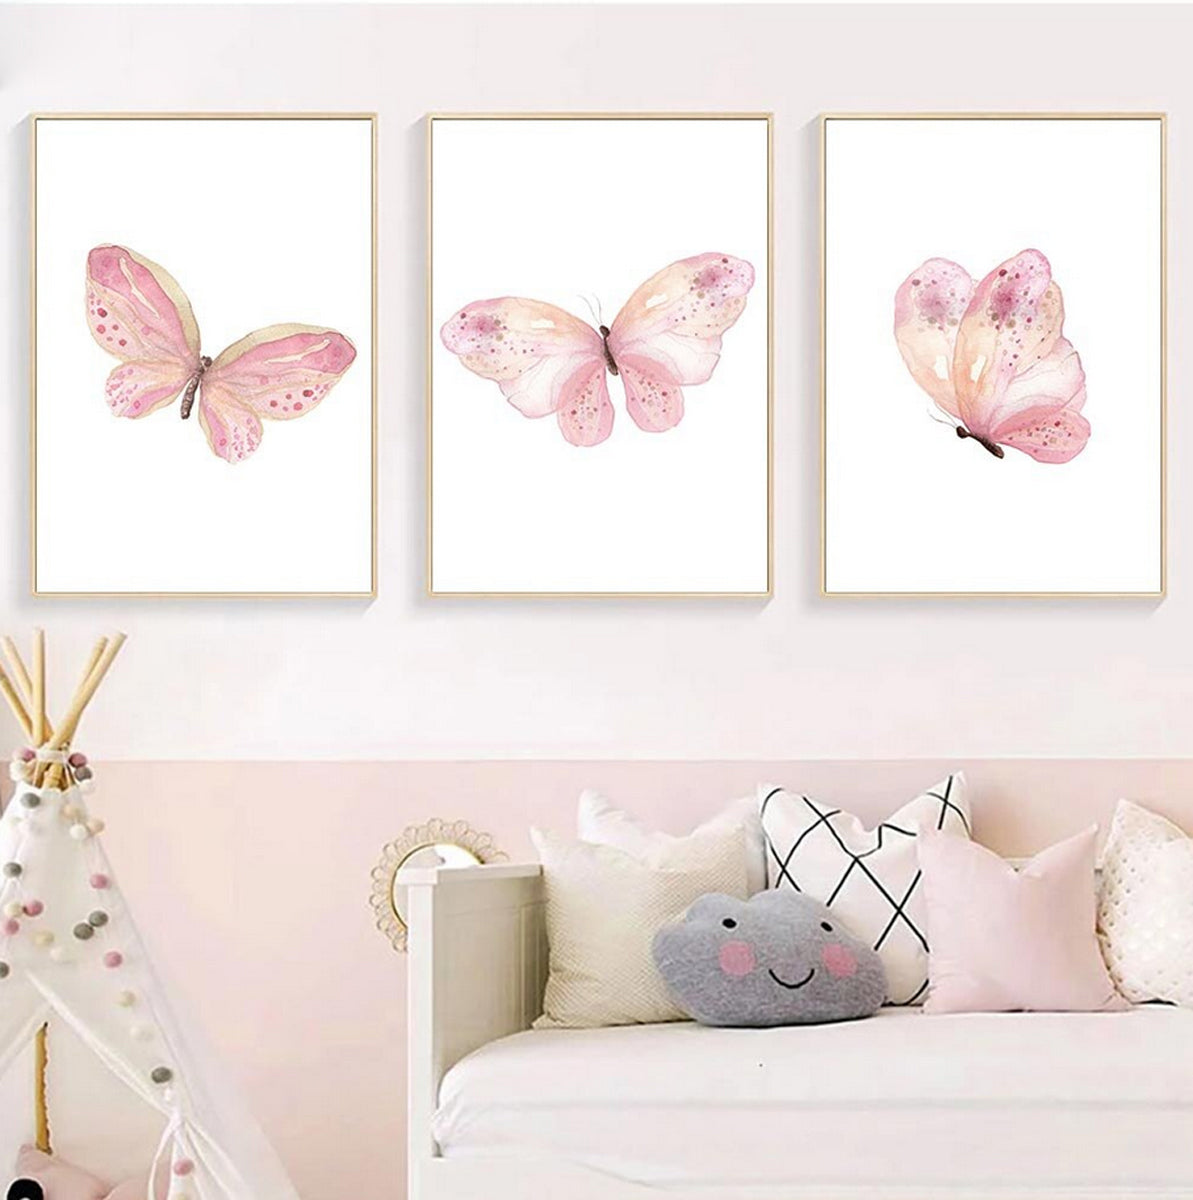 TPFLiving Poster Leinwand / Rosa Schmetterlinge für Kinderzimmer - Auch im 3er Set / Verschiedene Größen - OHNE Rahmen - Modell b1735